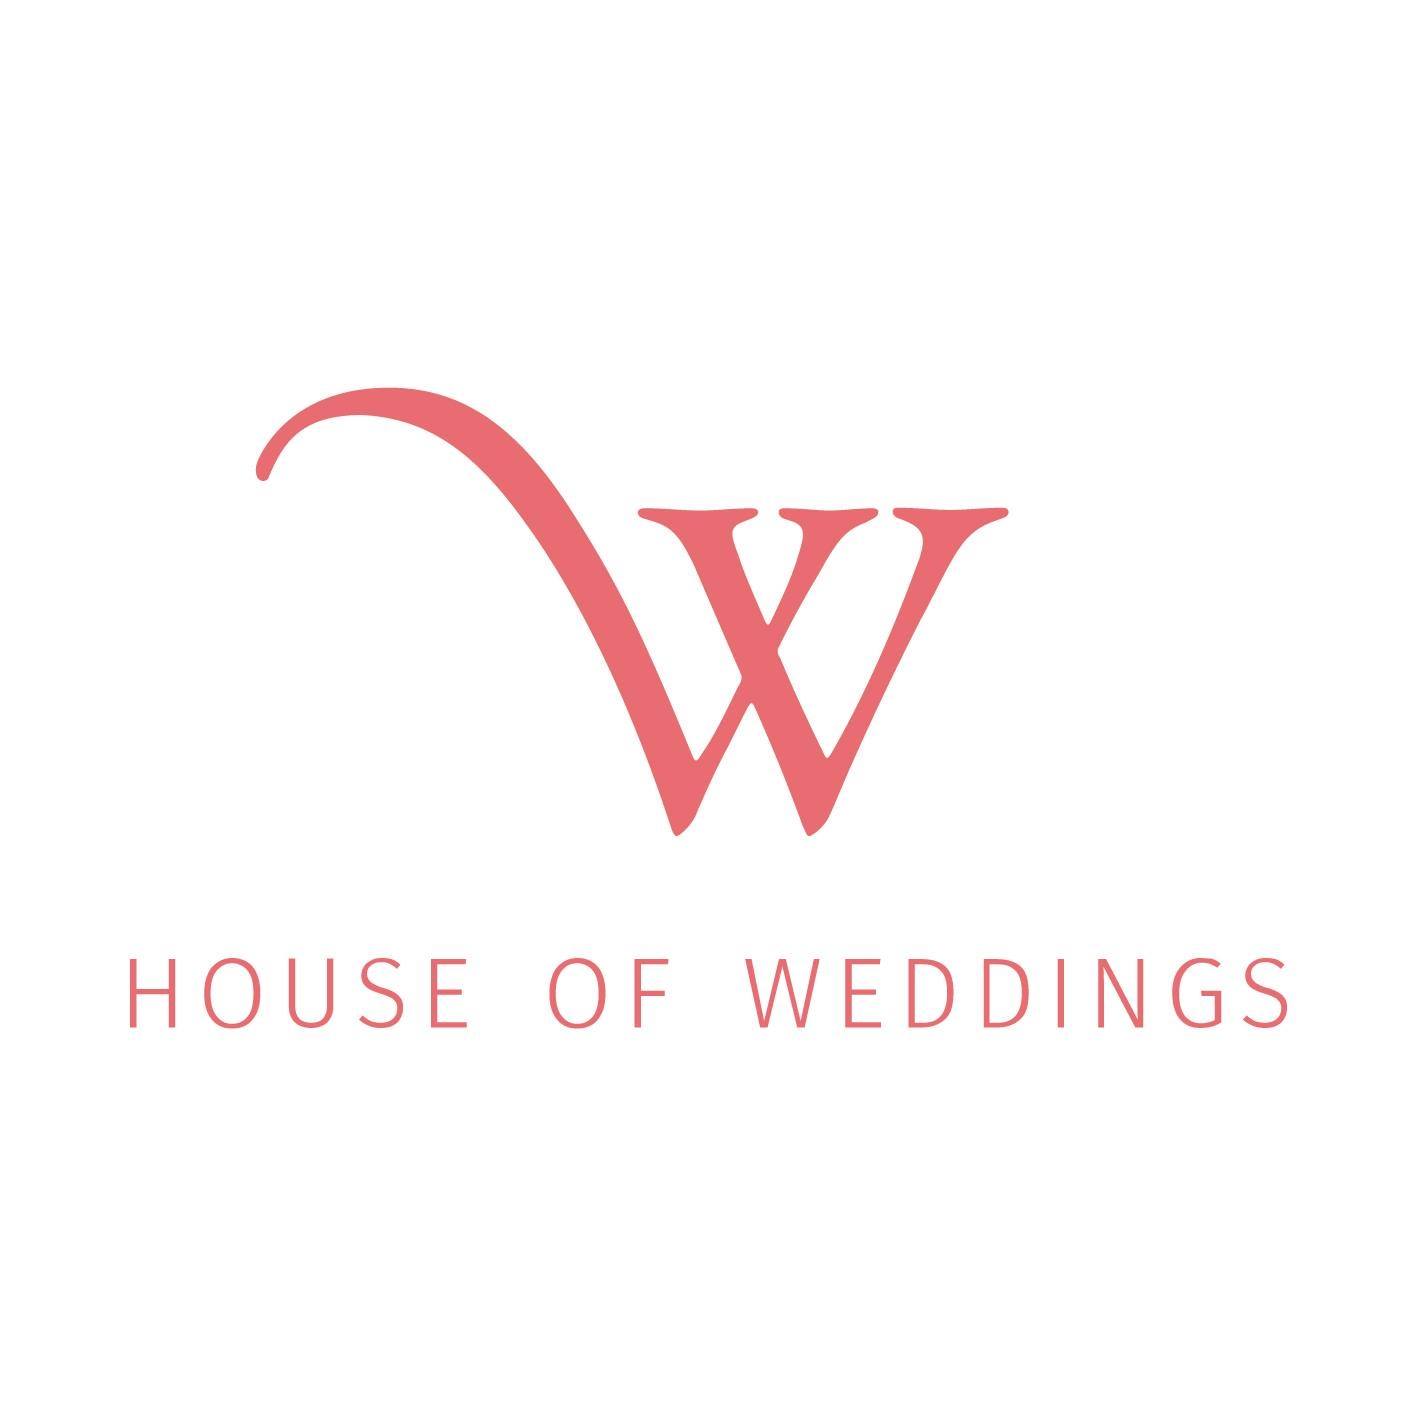 House of weddings